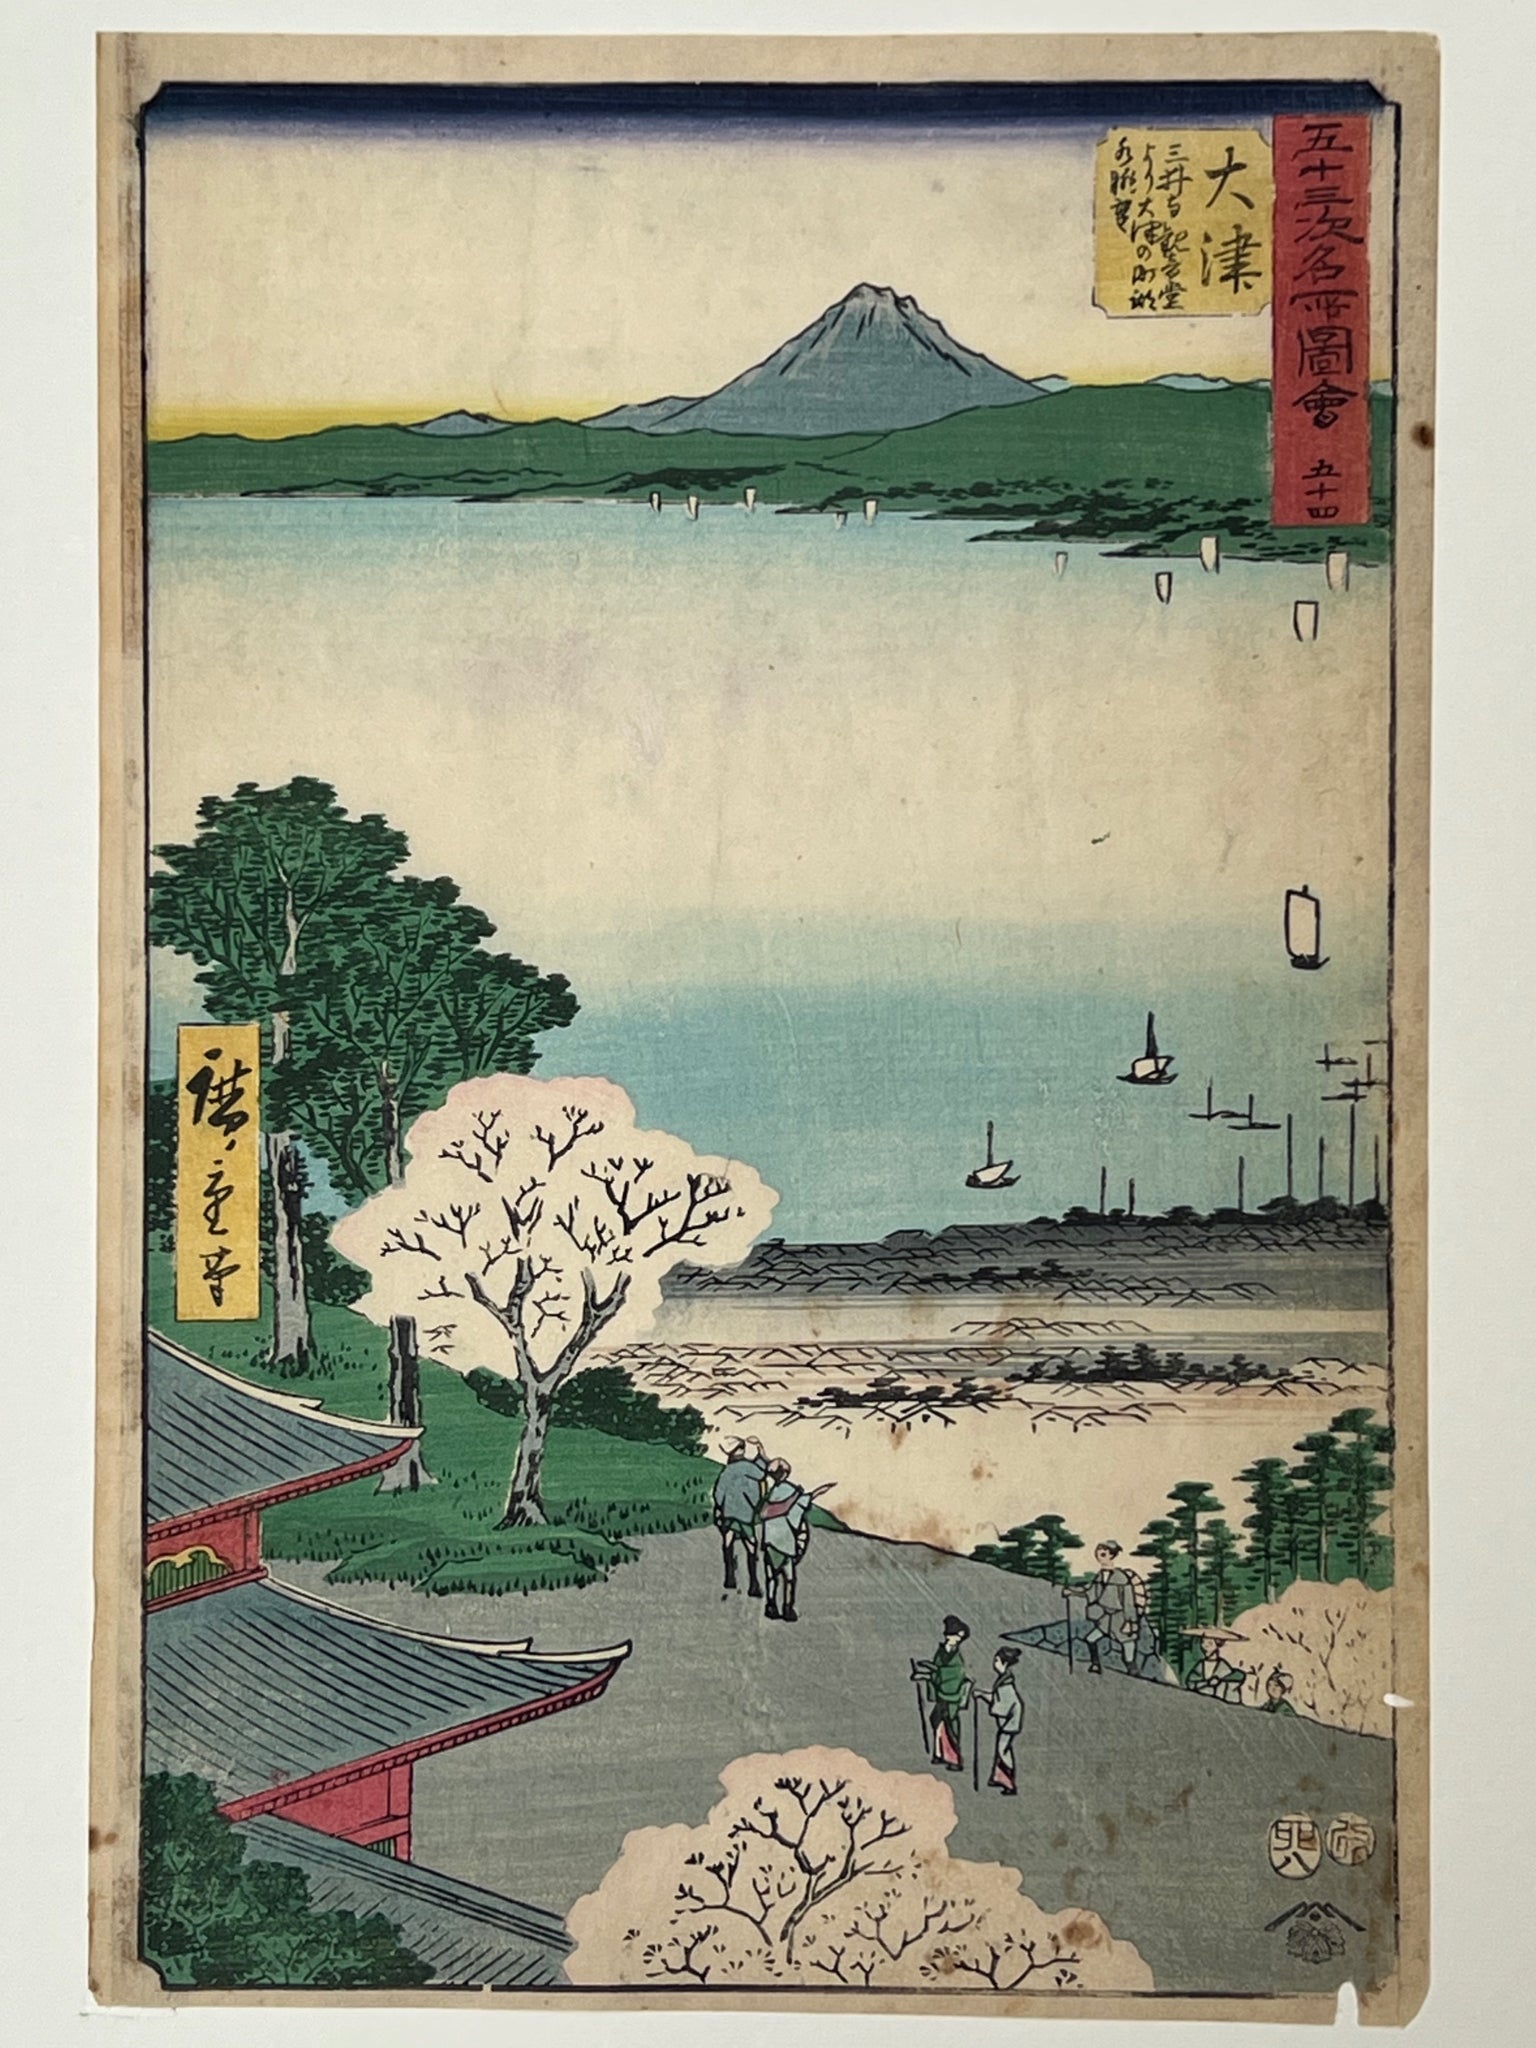 la collection d'estampes japonaises de c